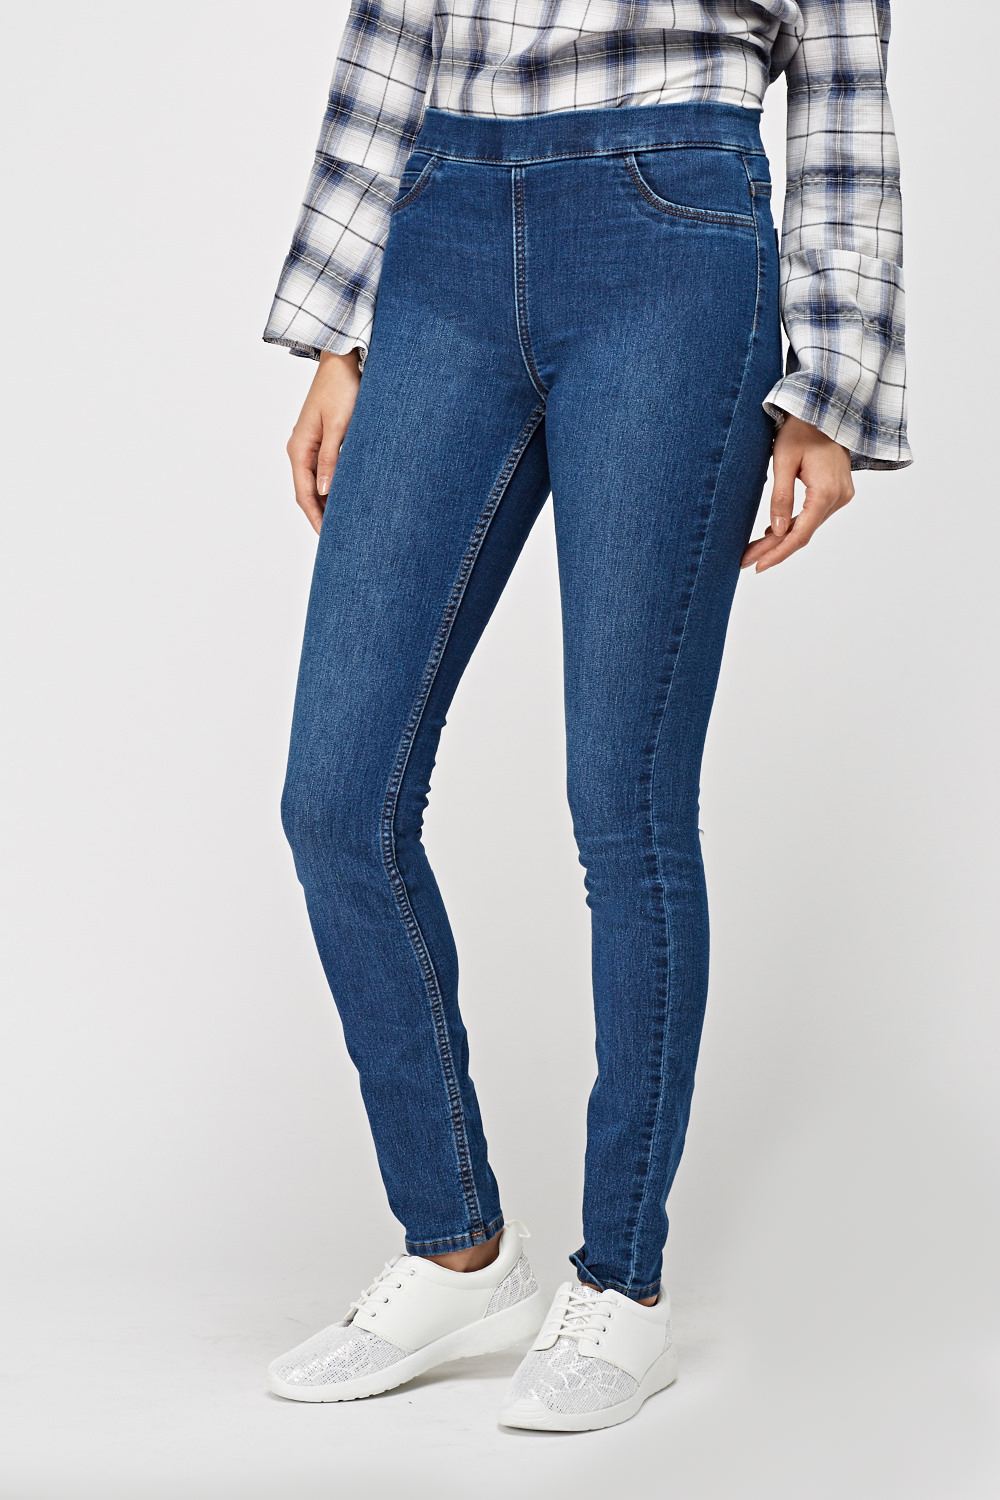 high waisted jean leggings for women